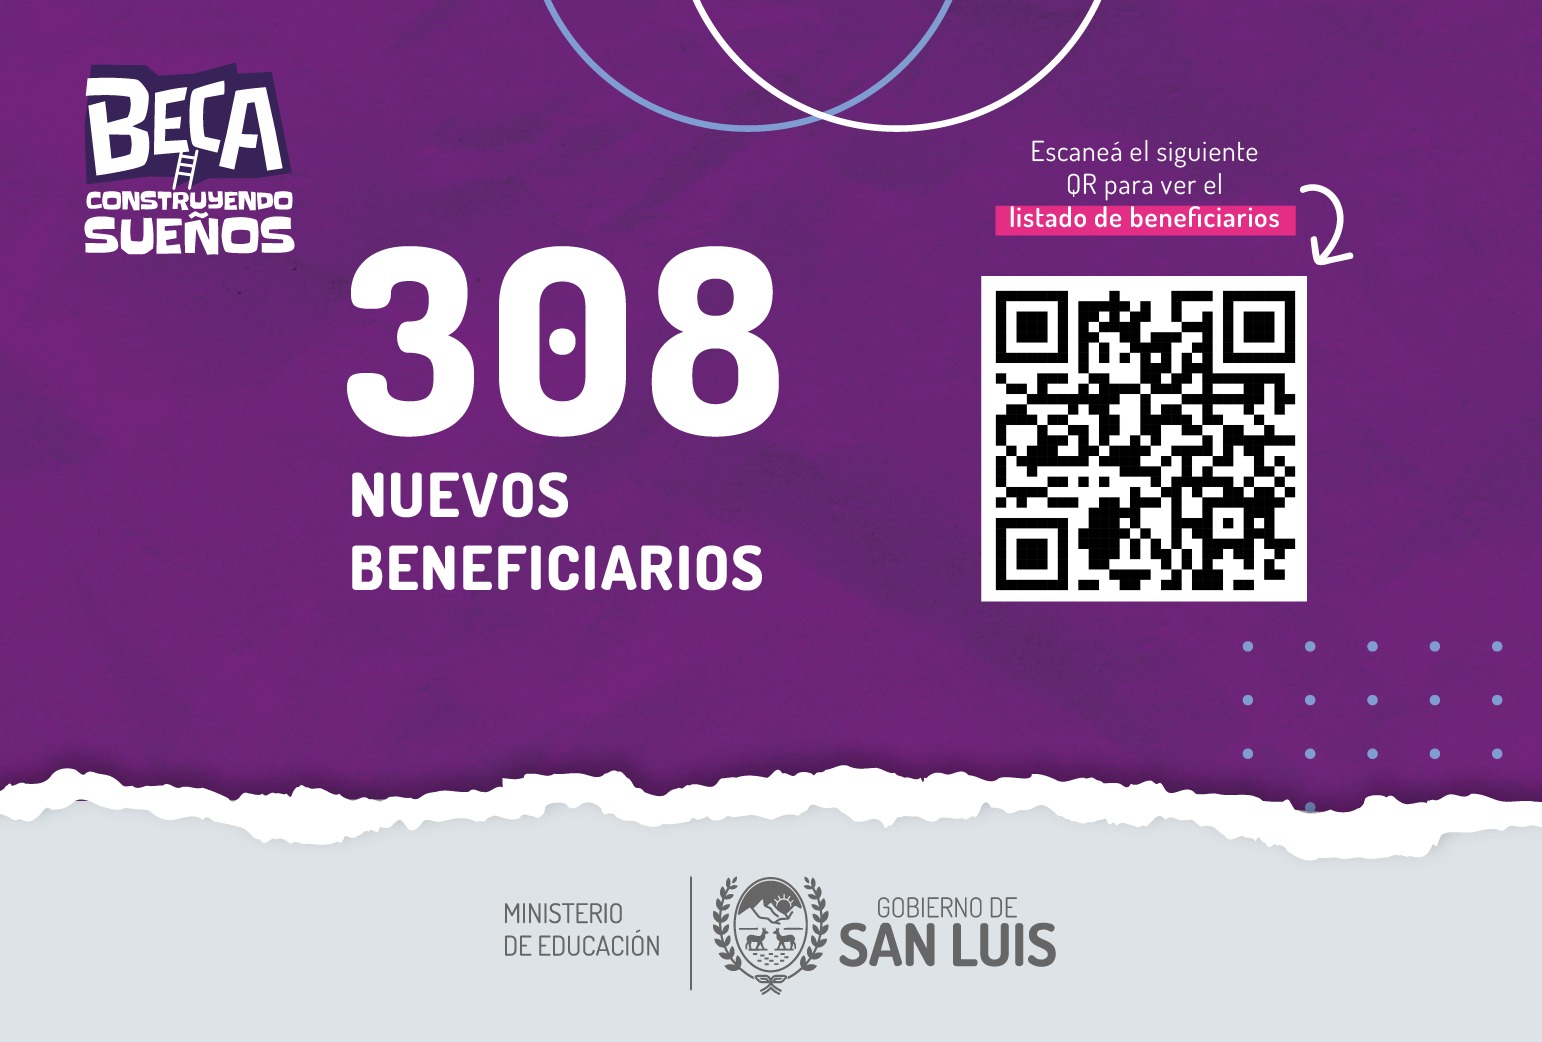 You are currently viewing La Beca “Construyendo Sueños” tiene 308 nuevos beneficiarios